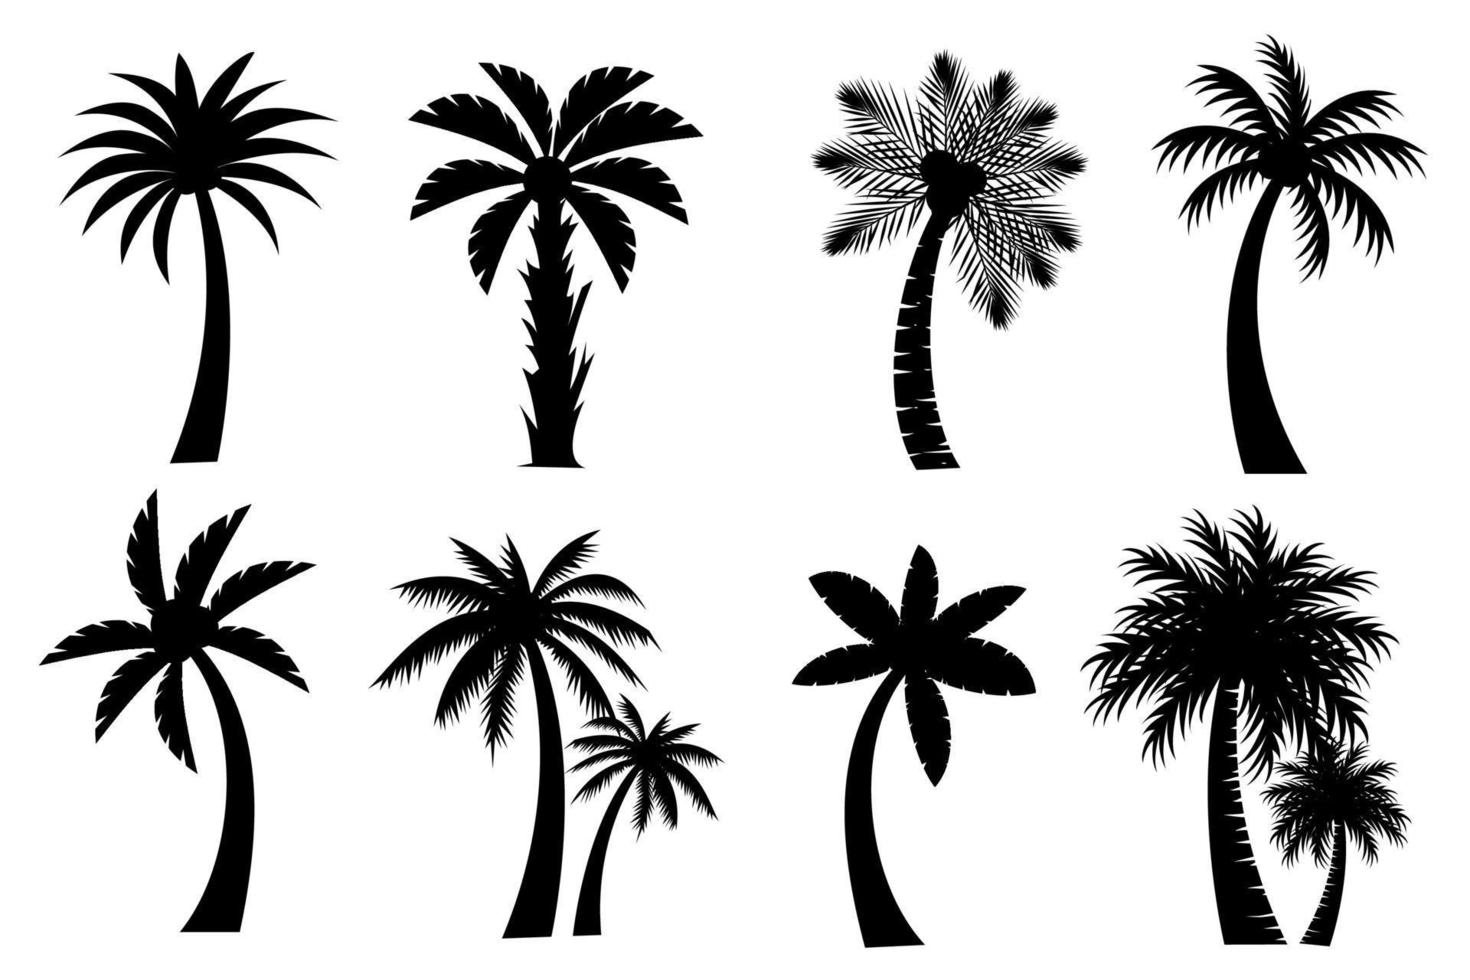 colección de negro Coco o palma arboles icono. lata ser usado a ilustrar ninguna naturaleza o sano estilo de vida tema. vector